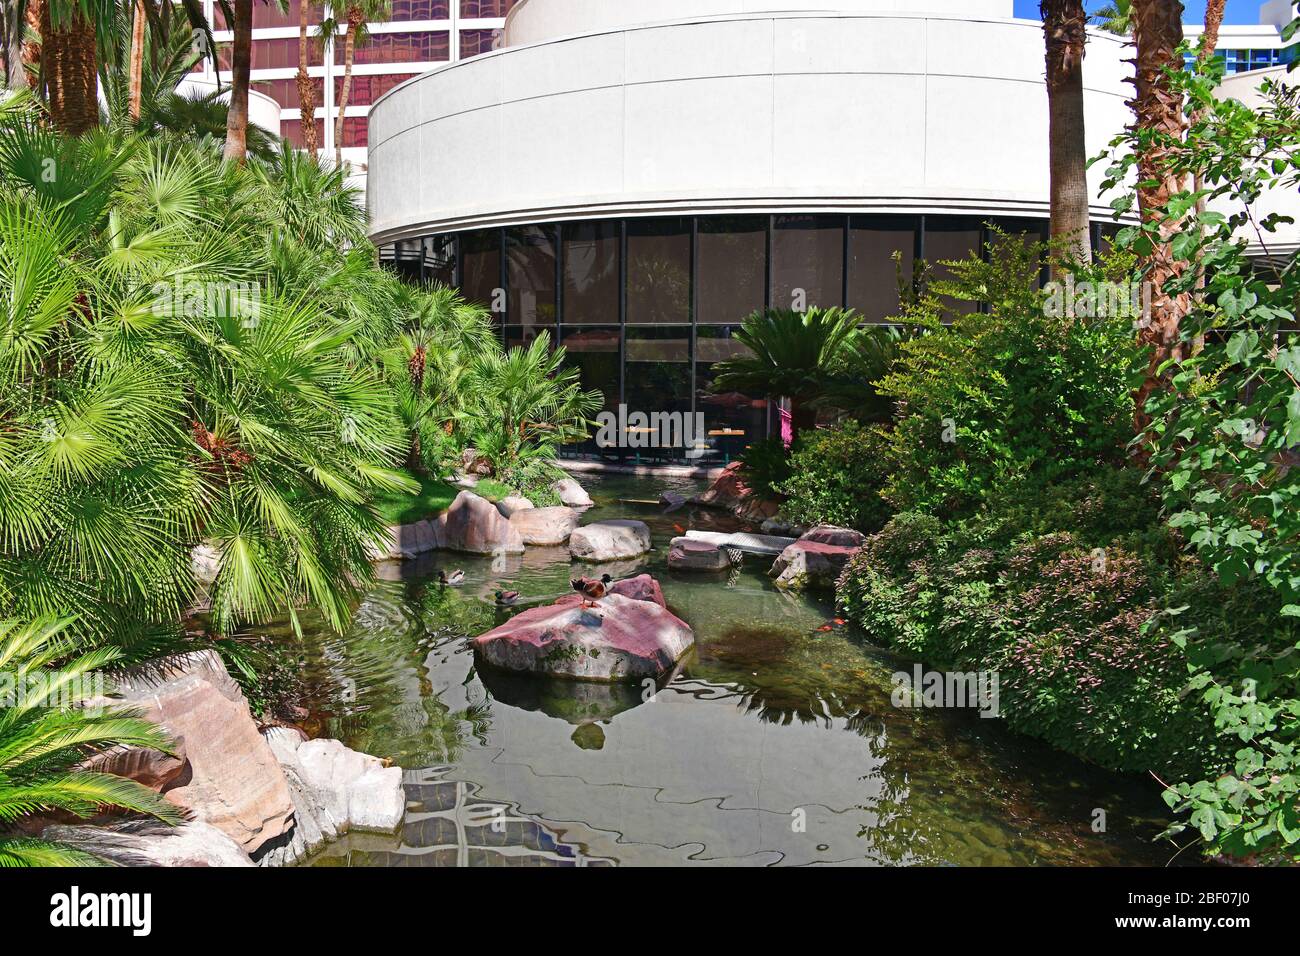 Il Flamingo habitat per la flora e la fauna. Las Vegas NV, STATI UNITI D'AMERICA 09-30-18. Si trova in una zona di 15 acri, l'habitat è piena di uccelli esotici, i pesci e le tartarughe marine Foto Stock